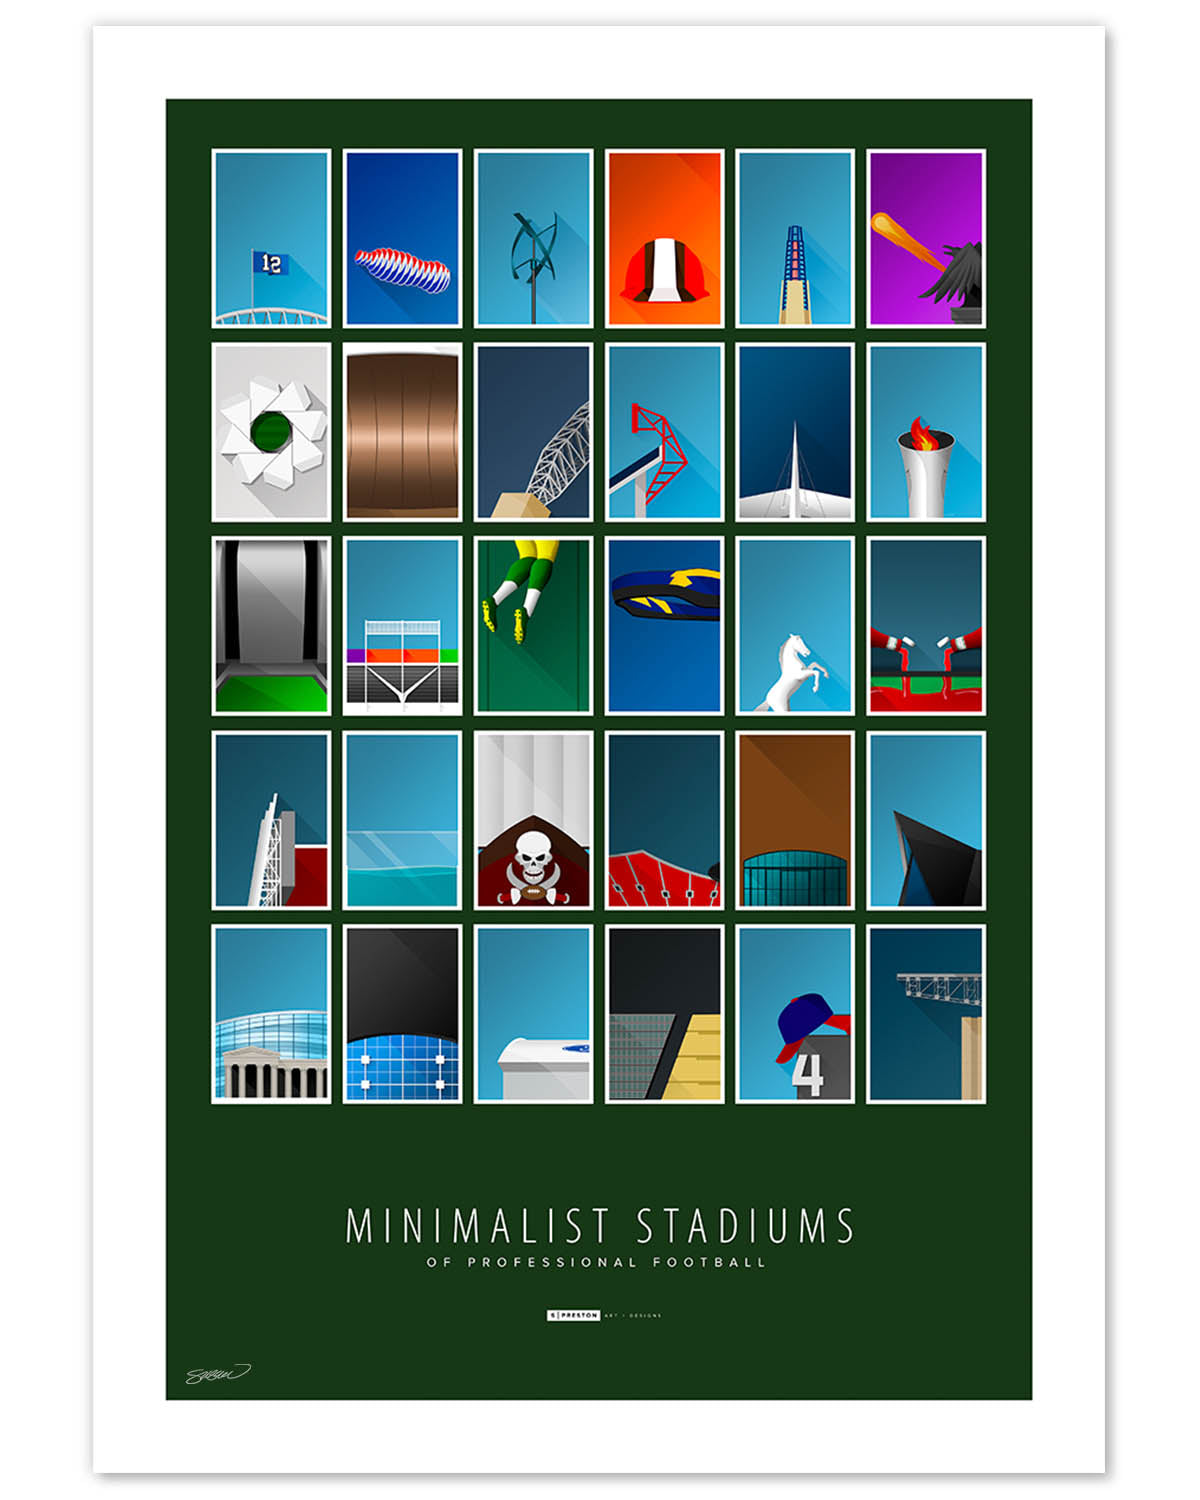 ALL Minimalist Football Stadiums